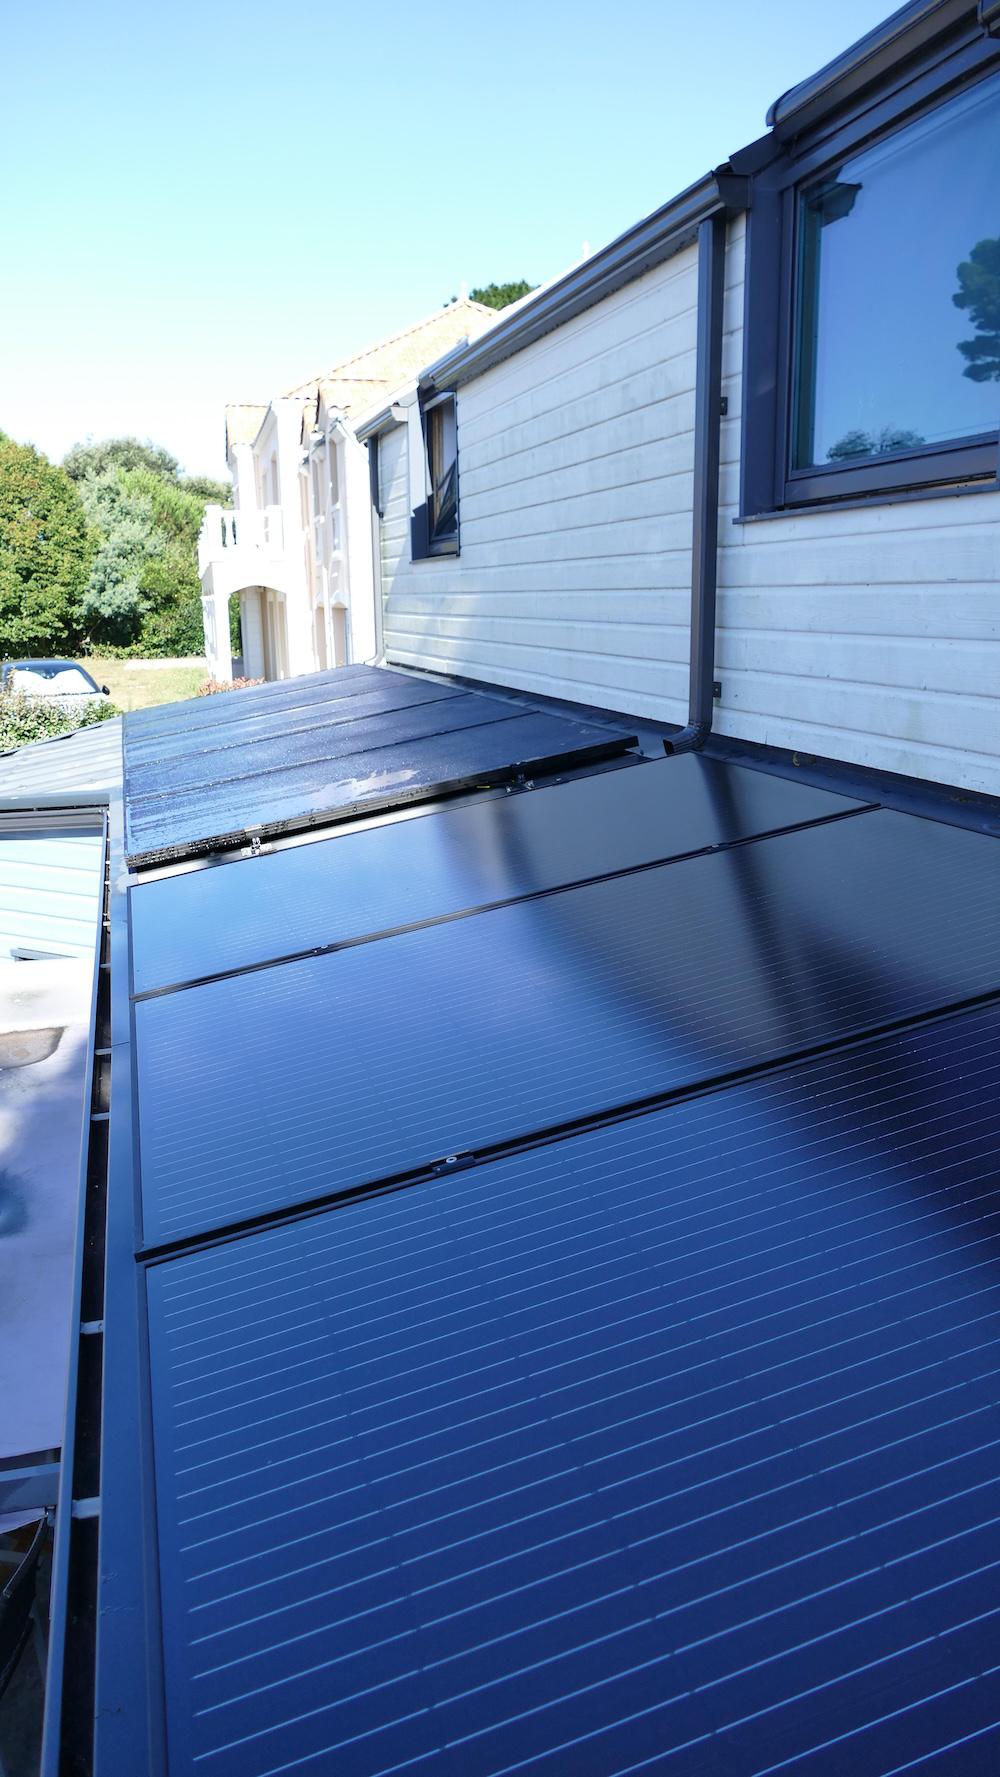 <span class="popup-mms-6">Installations de panneaux solaires sur toiture inclinée - 4050W</span>